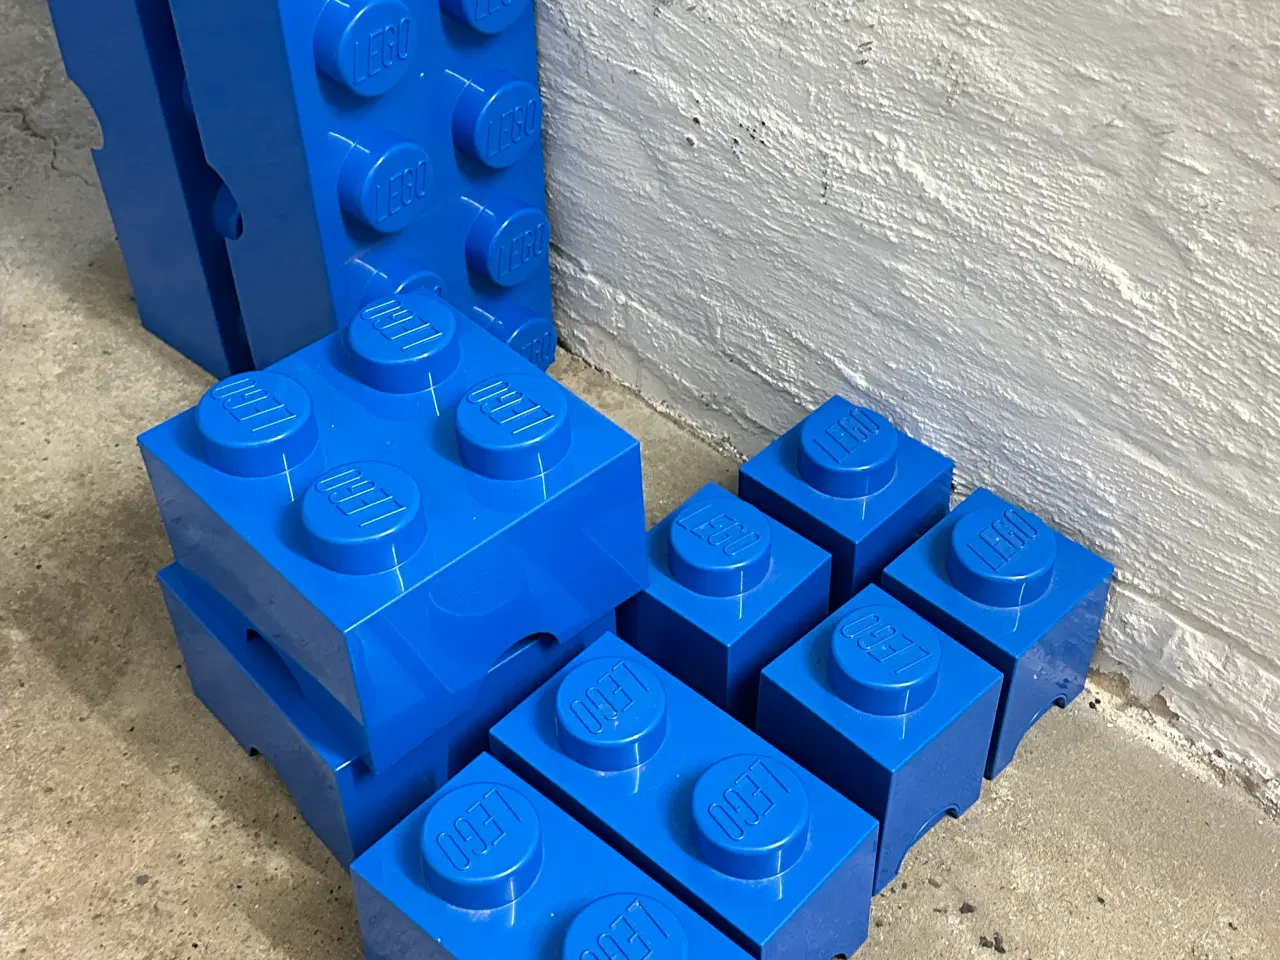 Billede 2 - Blandet LEGO og blå LEGO-kasser